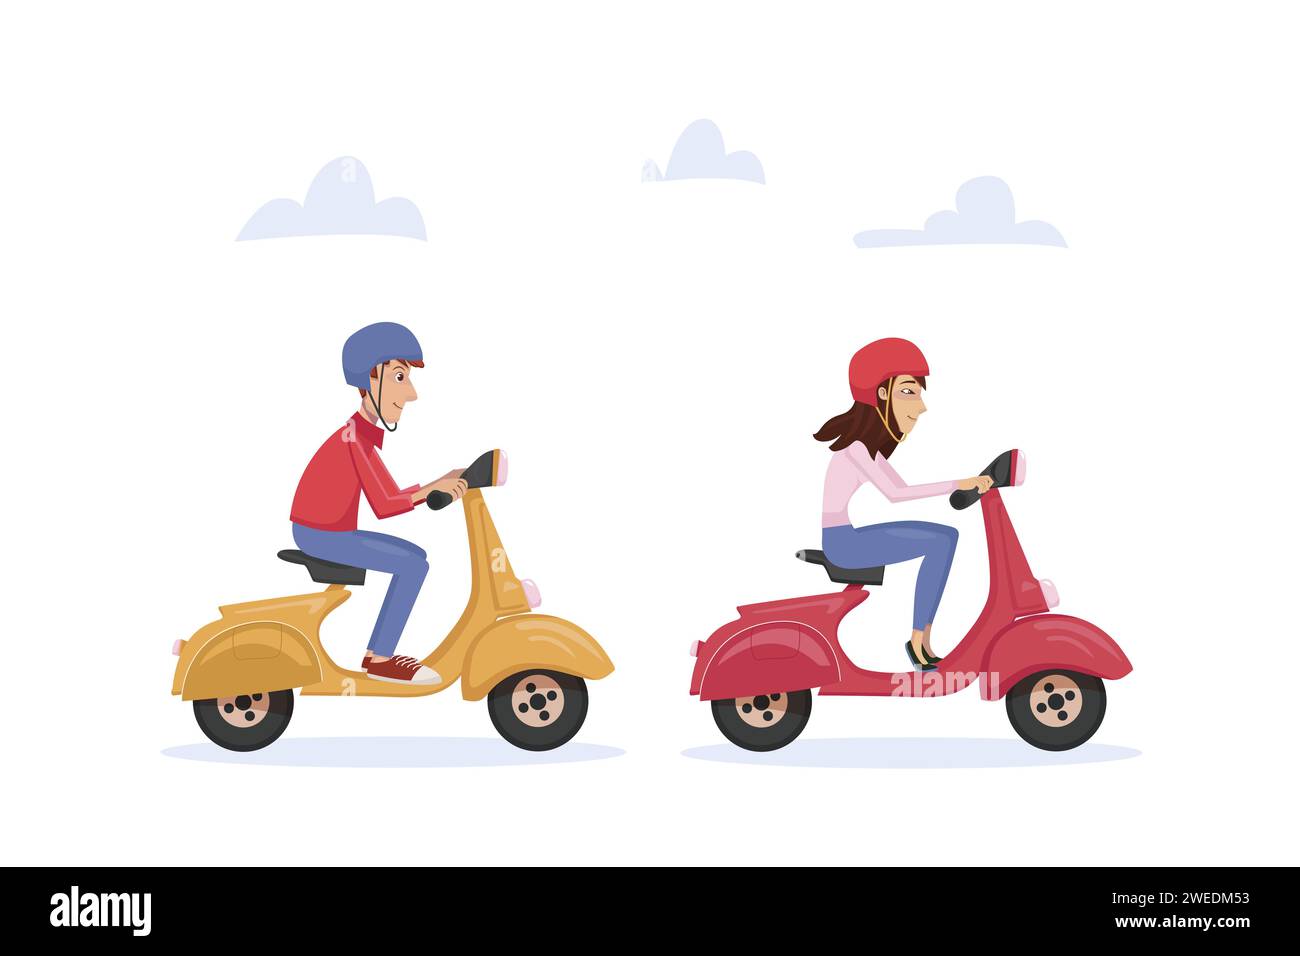 Junge Paare, Mann und Frau, die auf zwei Motorrollern unterwegs sind und die gemeinsame Zeit genießen. Aktiver Lebensstil, Ausflug. Vektorillustration im Cartoon-Stil auf Stock Vektor